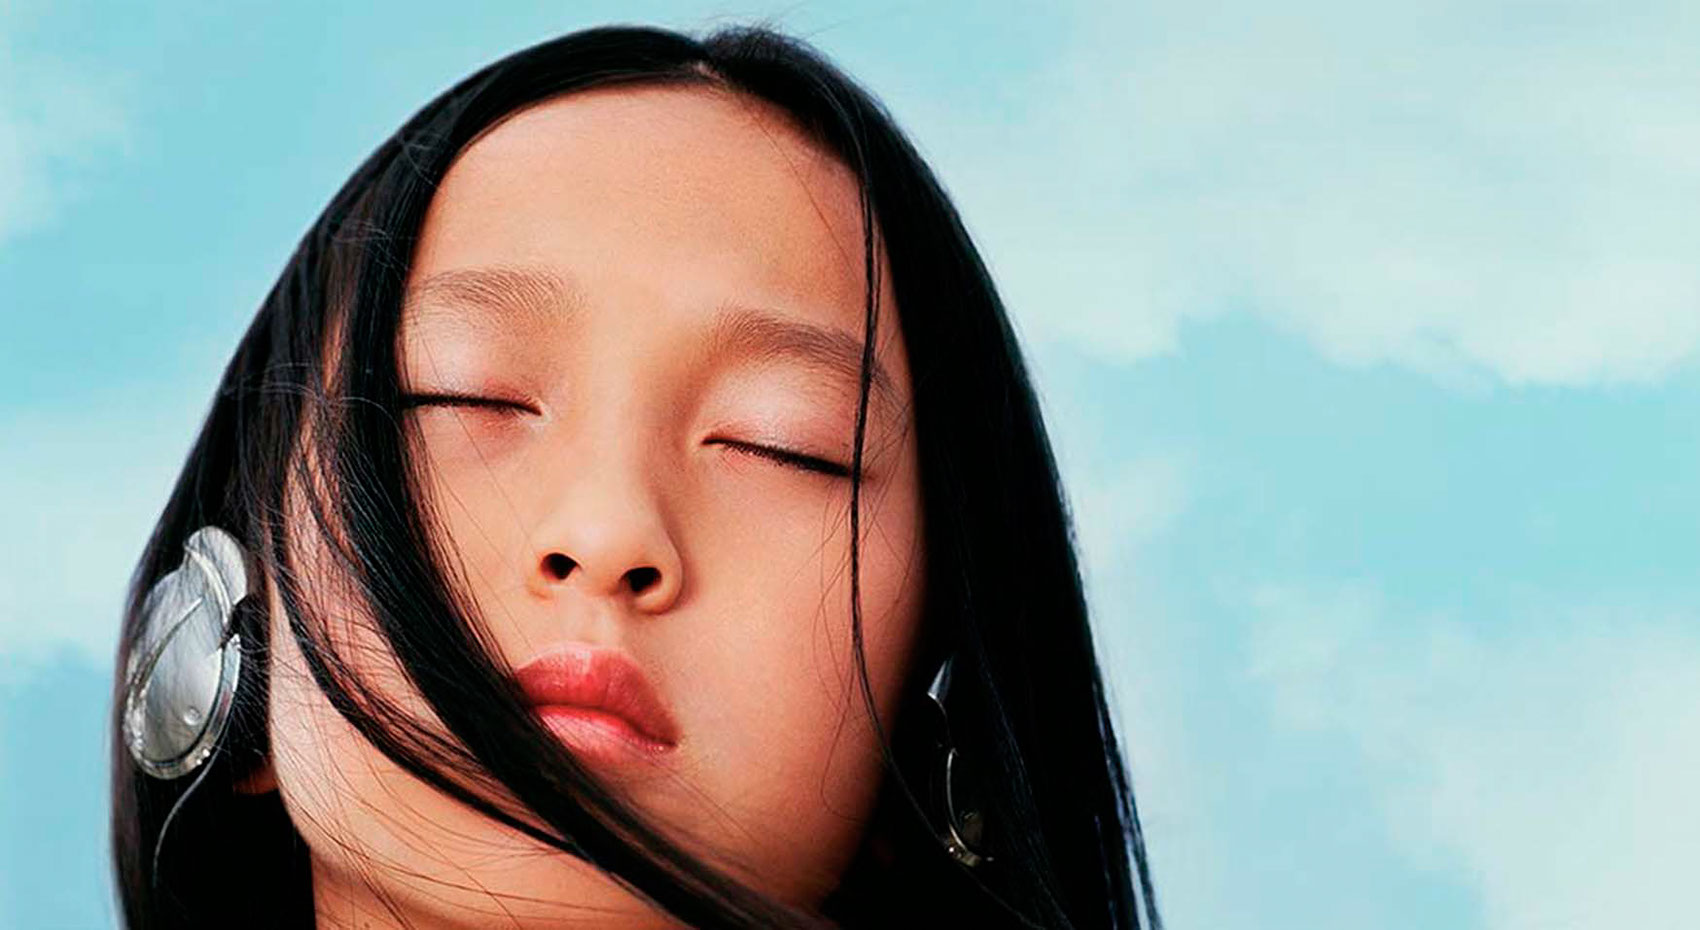 Photography_Children Teens_Asian girl in headphones-Tony Garcia